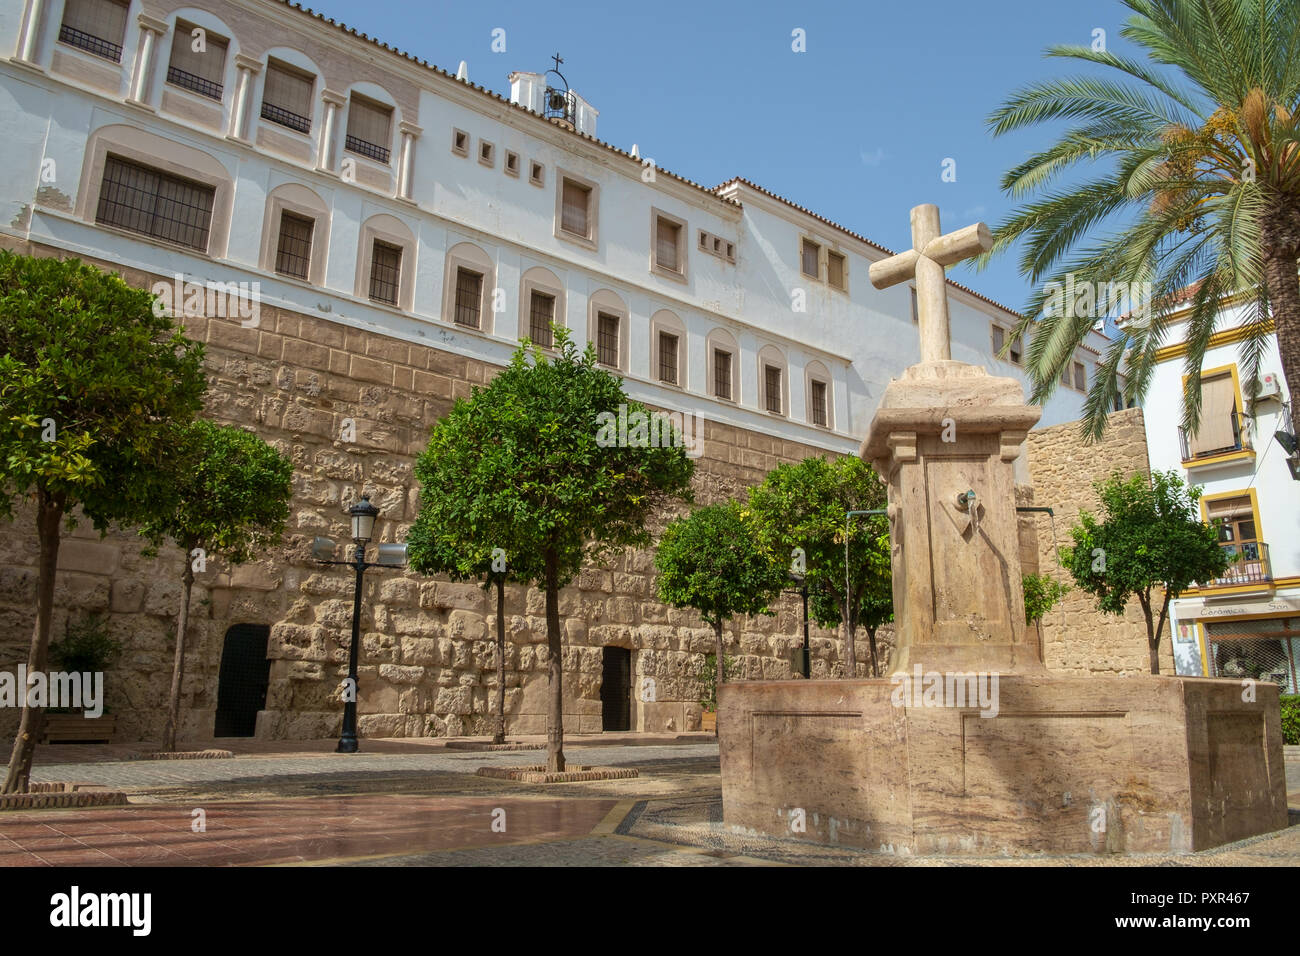 The Church Square (Plaze de la Iglesia) Marbella, Spain Stock Photo